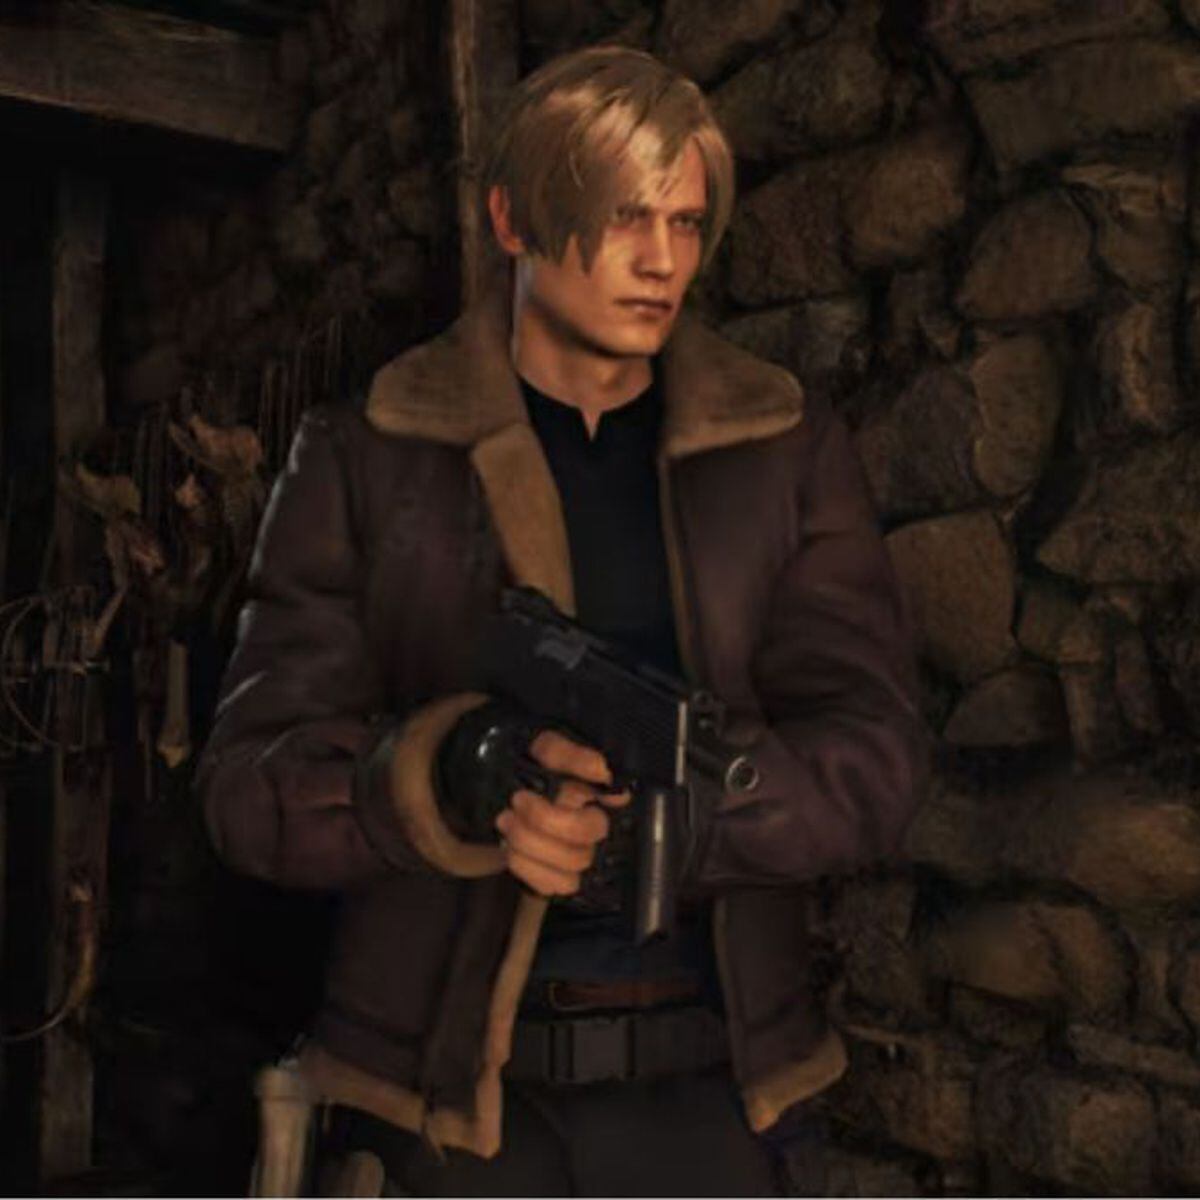 Resident Evil 4 Remake é oficial e chega em 2023 para PS5, Xbox